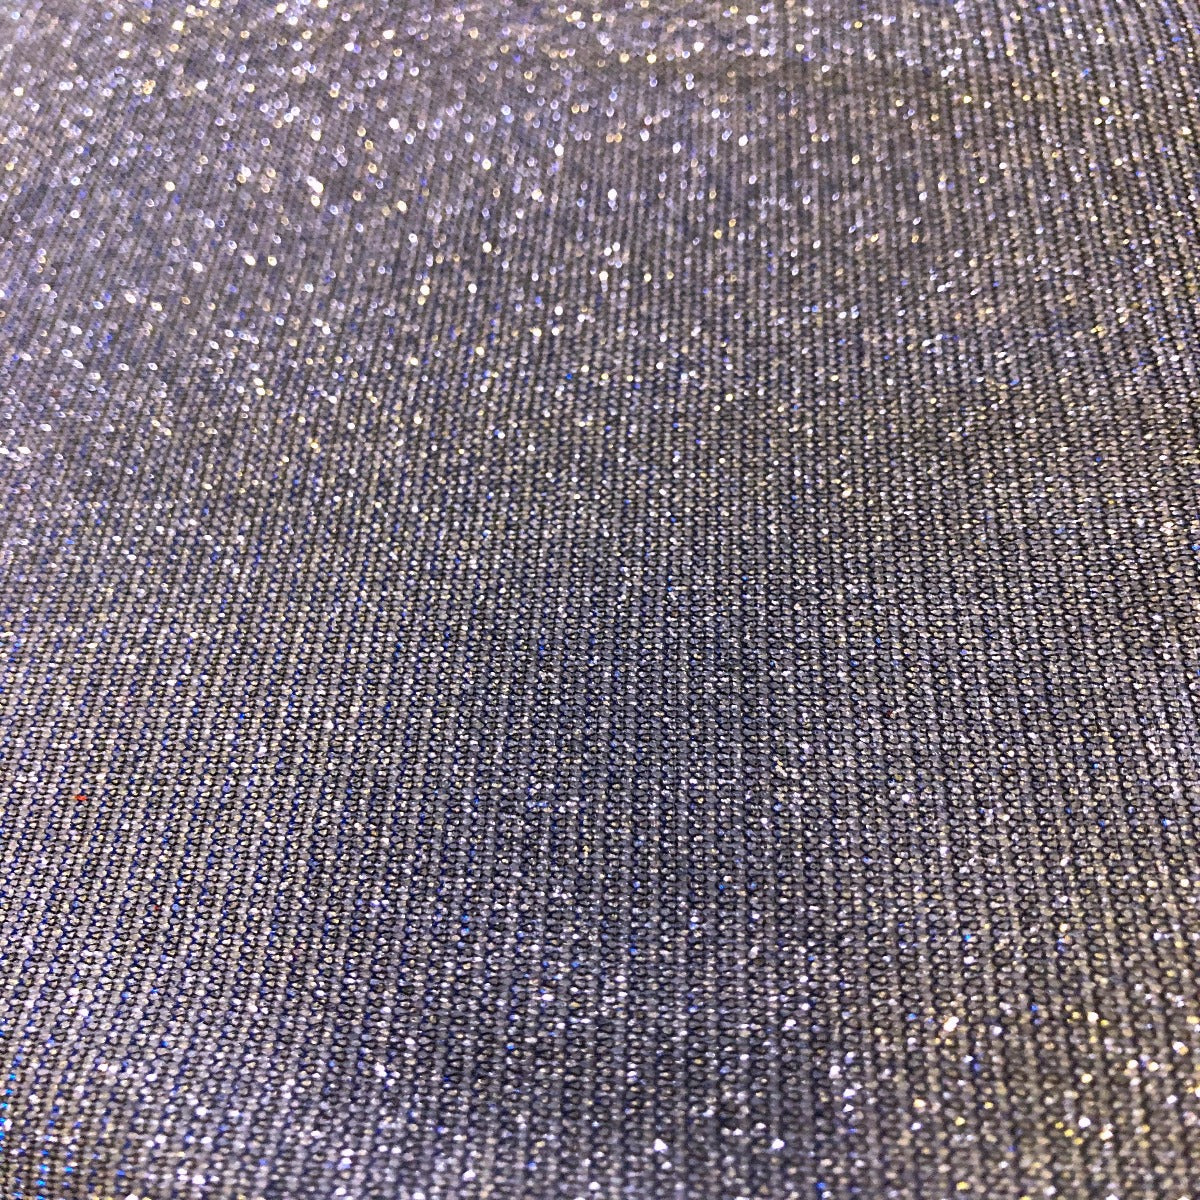 Silver Glitter Fabric